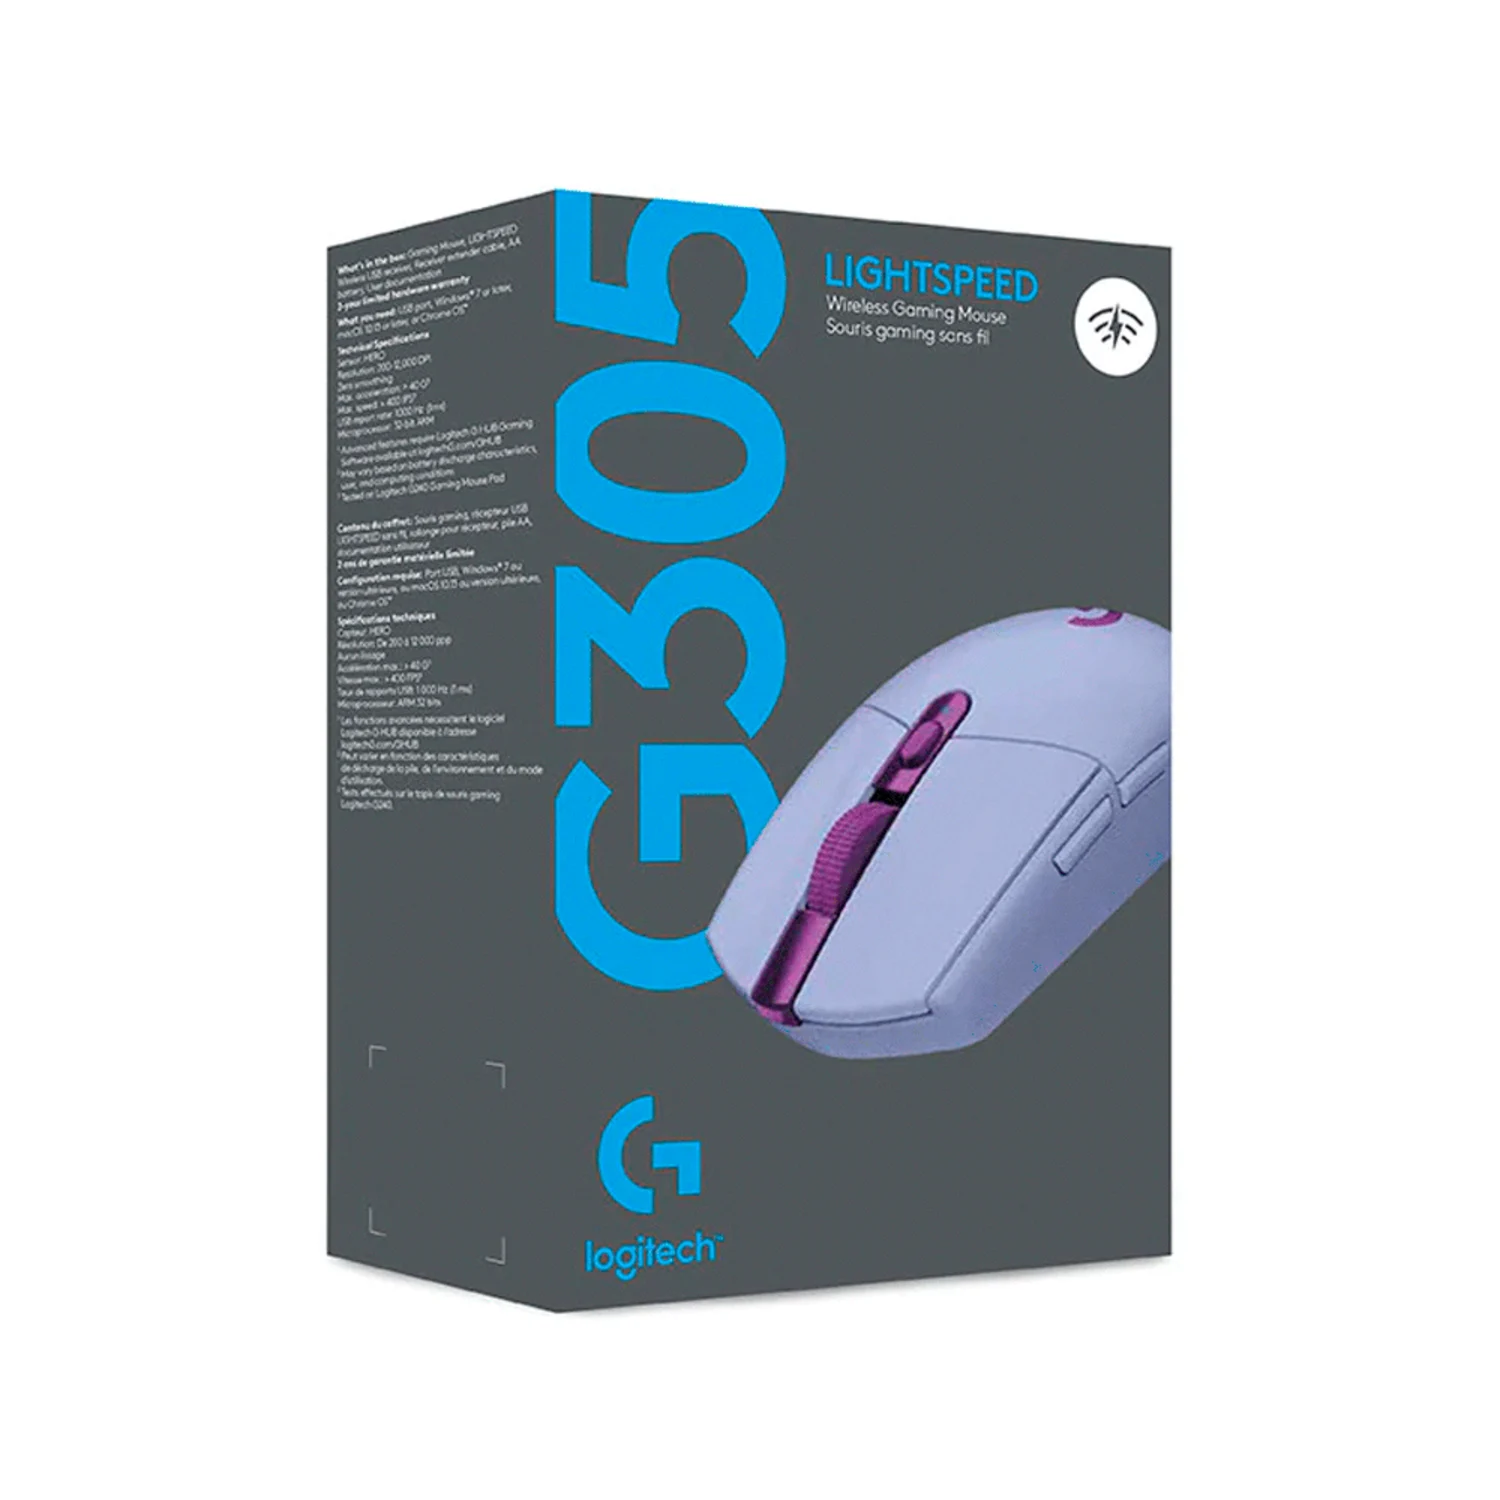 Mouse Gamer Logitech Wireless G305 Lightspeed - Lilás (910-006020)